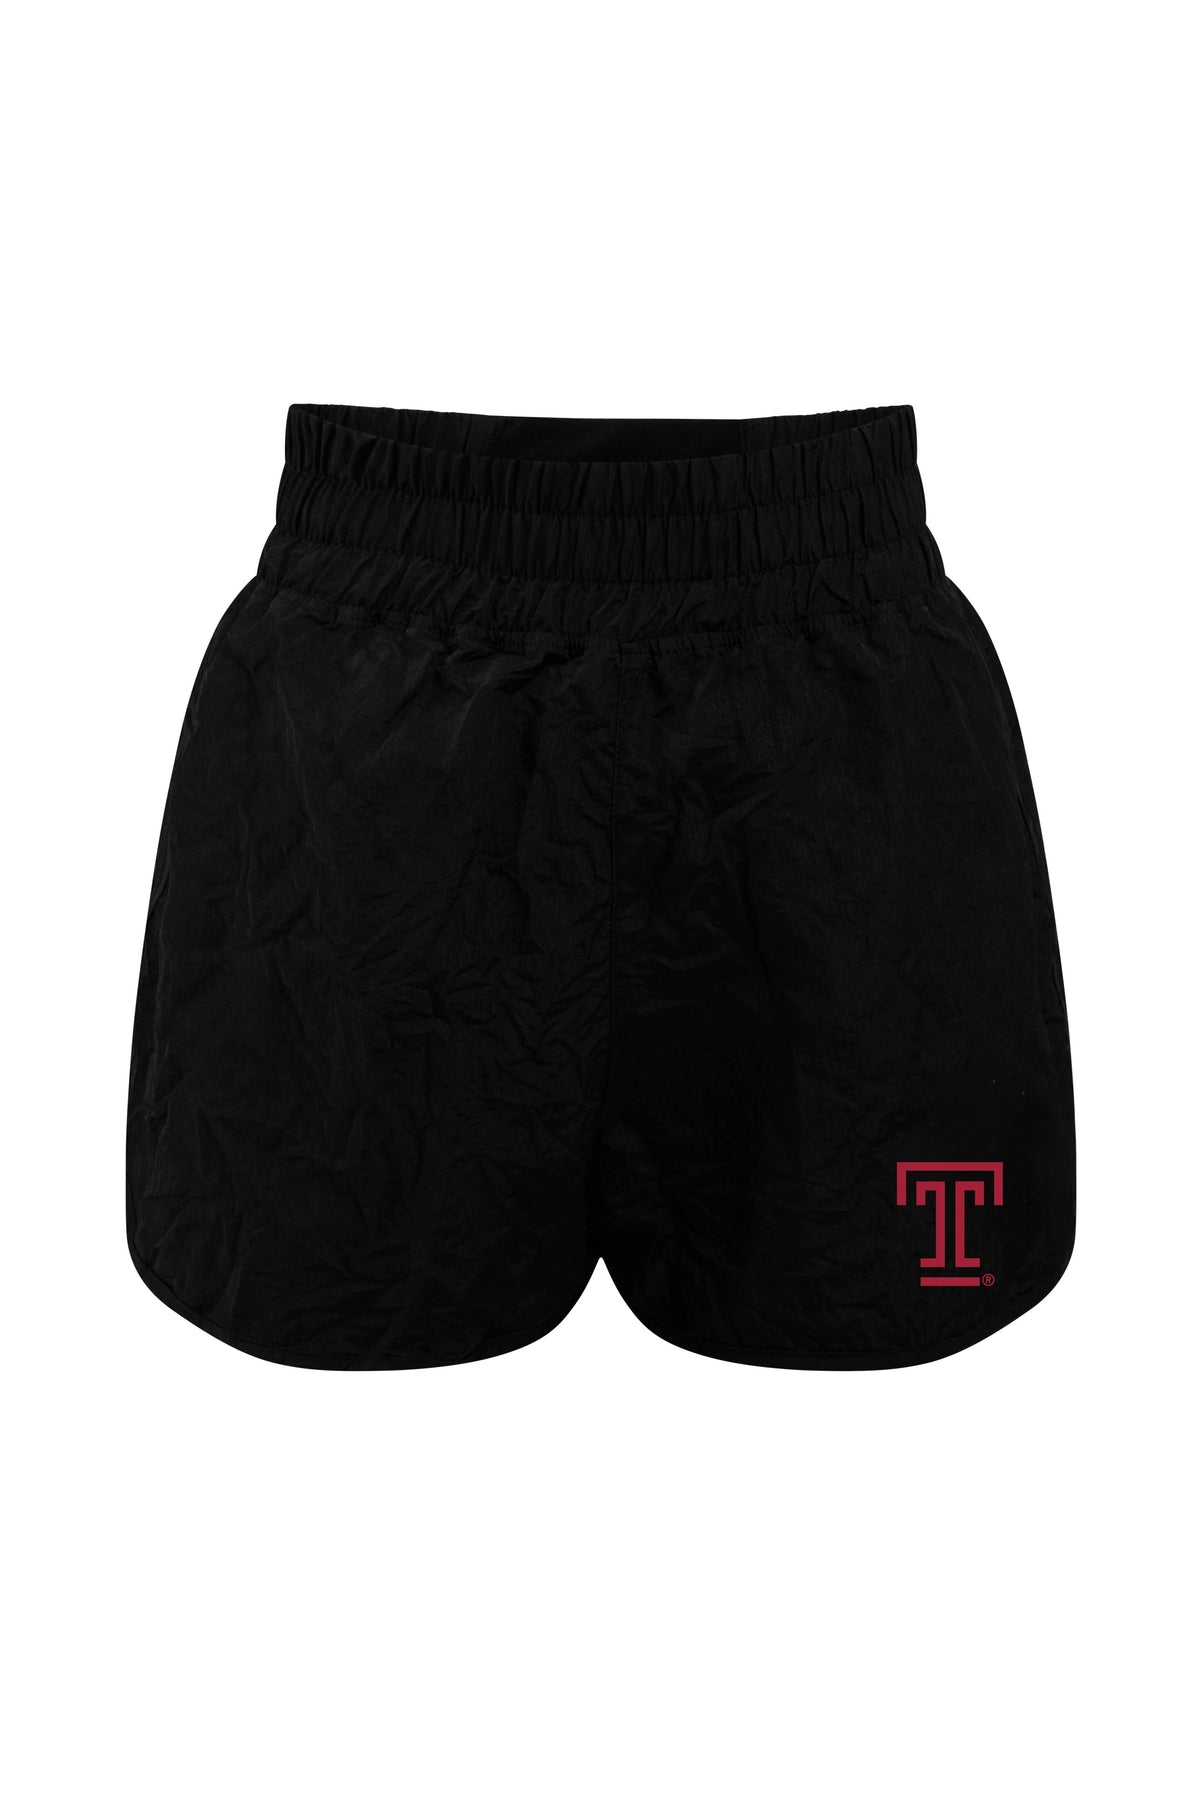 Temple University Boxer Short